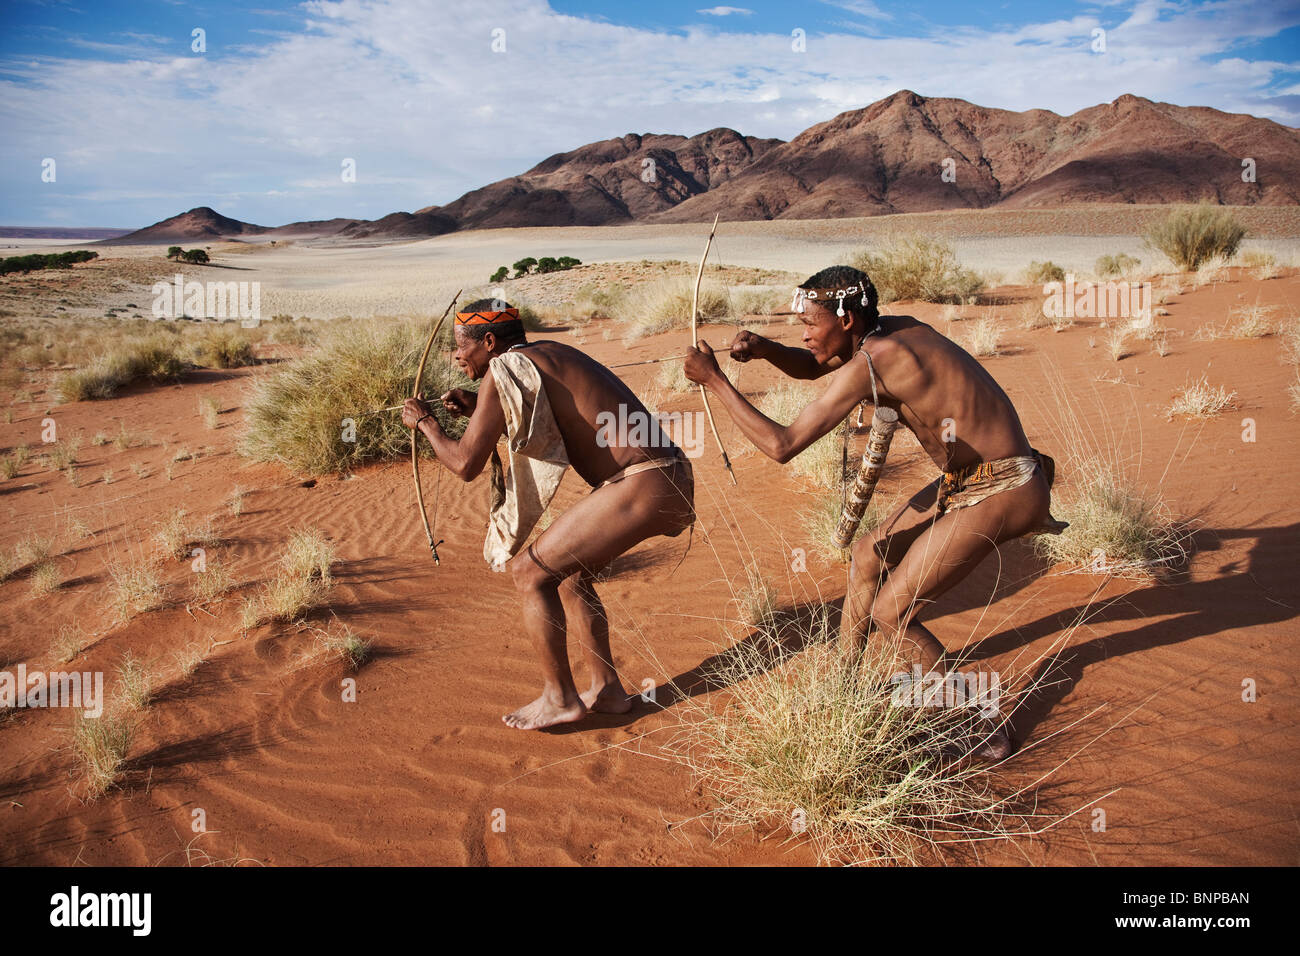 Bushman/peuple San. Les chasseurs San mâle armé d'arc et de la flèche traditionnelle Banque D'Images